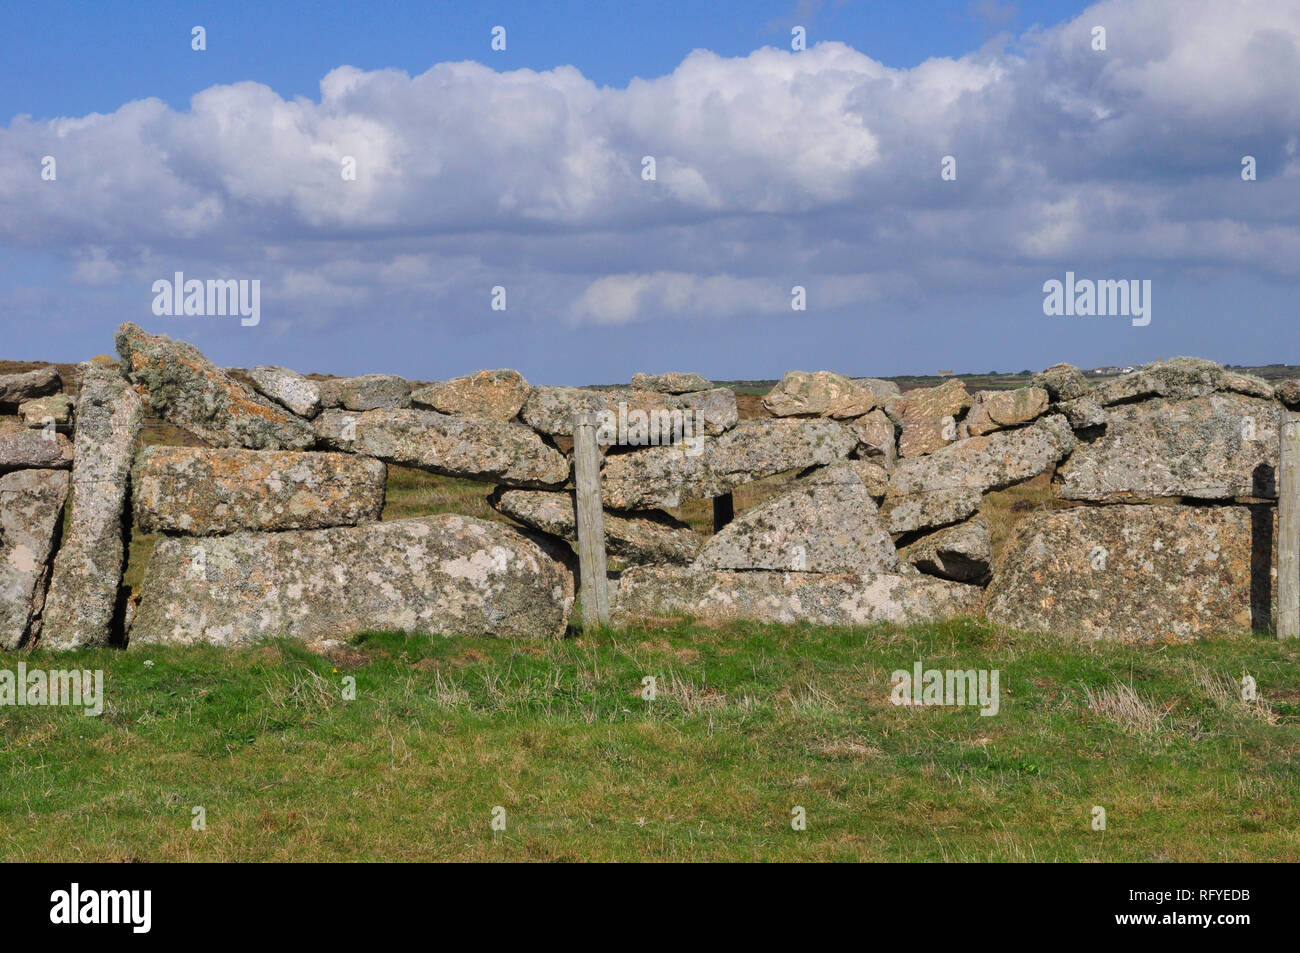 Grandi massi di granito crea un duraturo in pietra a secco.parete la parete è di licheni e muschi coperte grandi pietre con fori.Cornwall;UK;Inghilterra Foto Stock